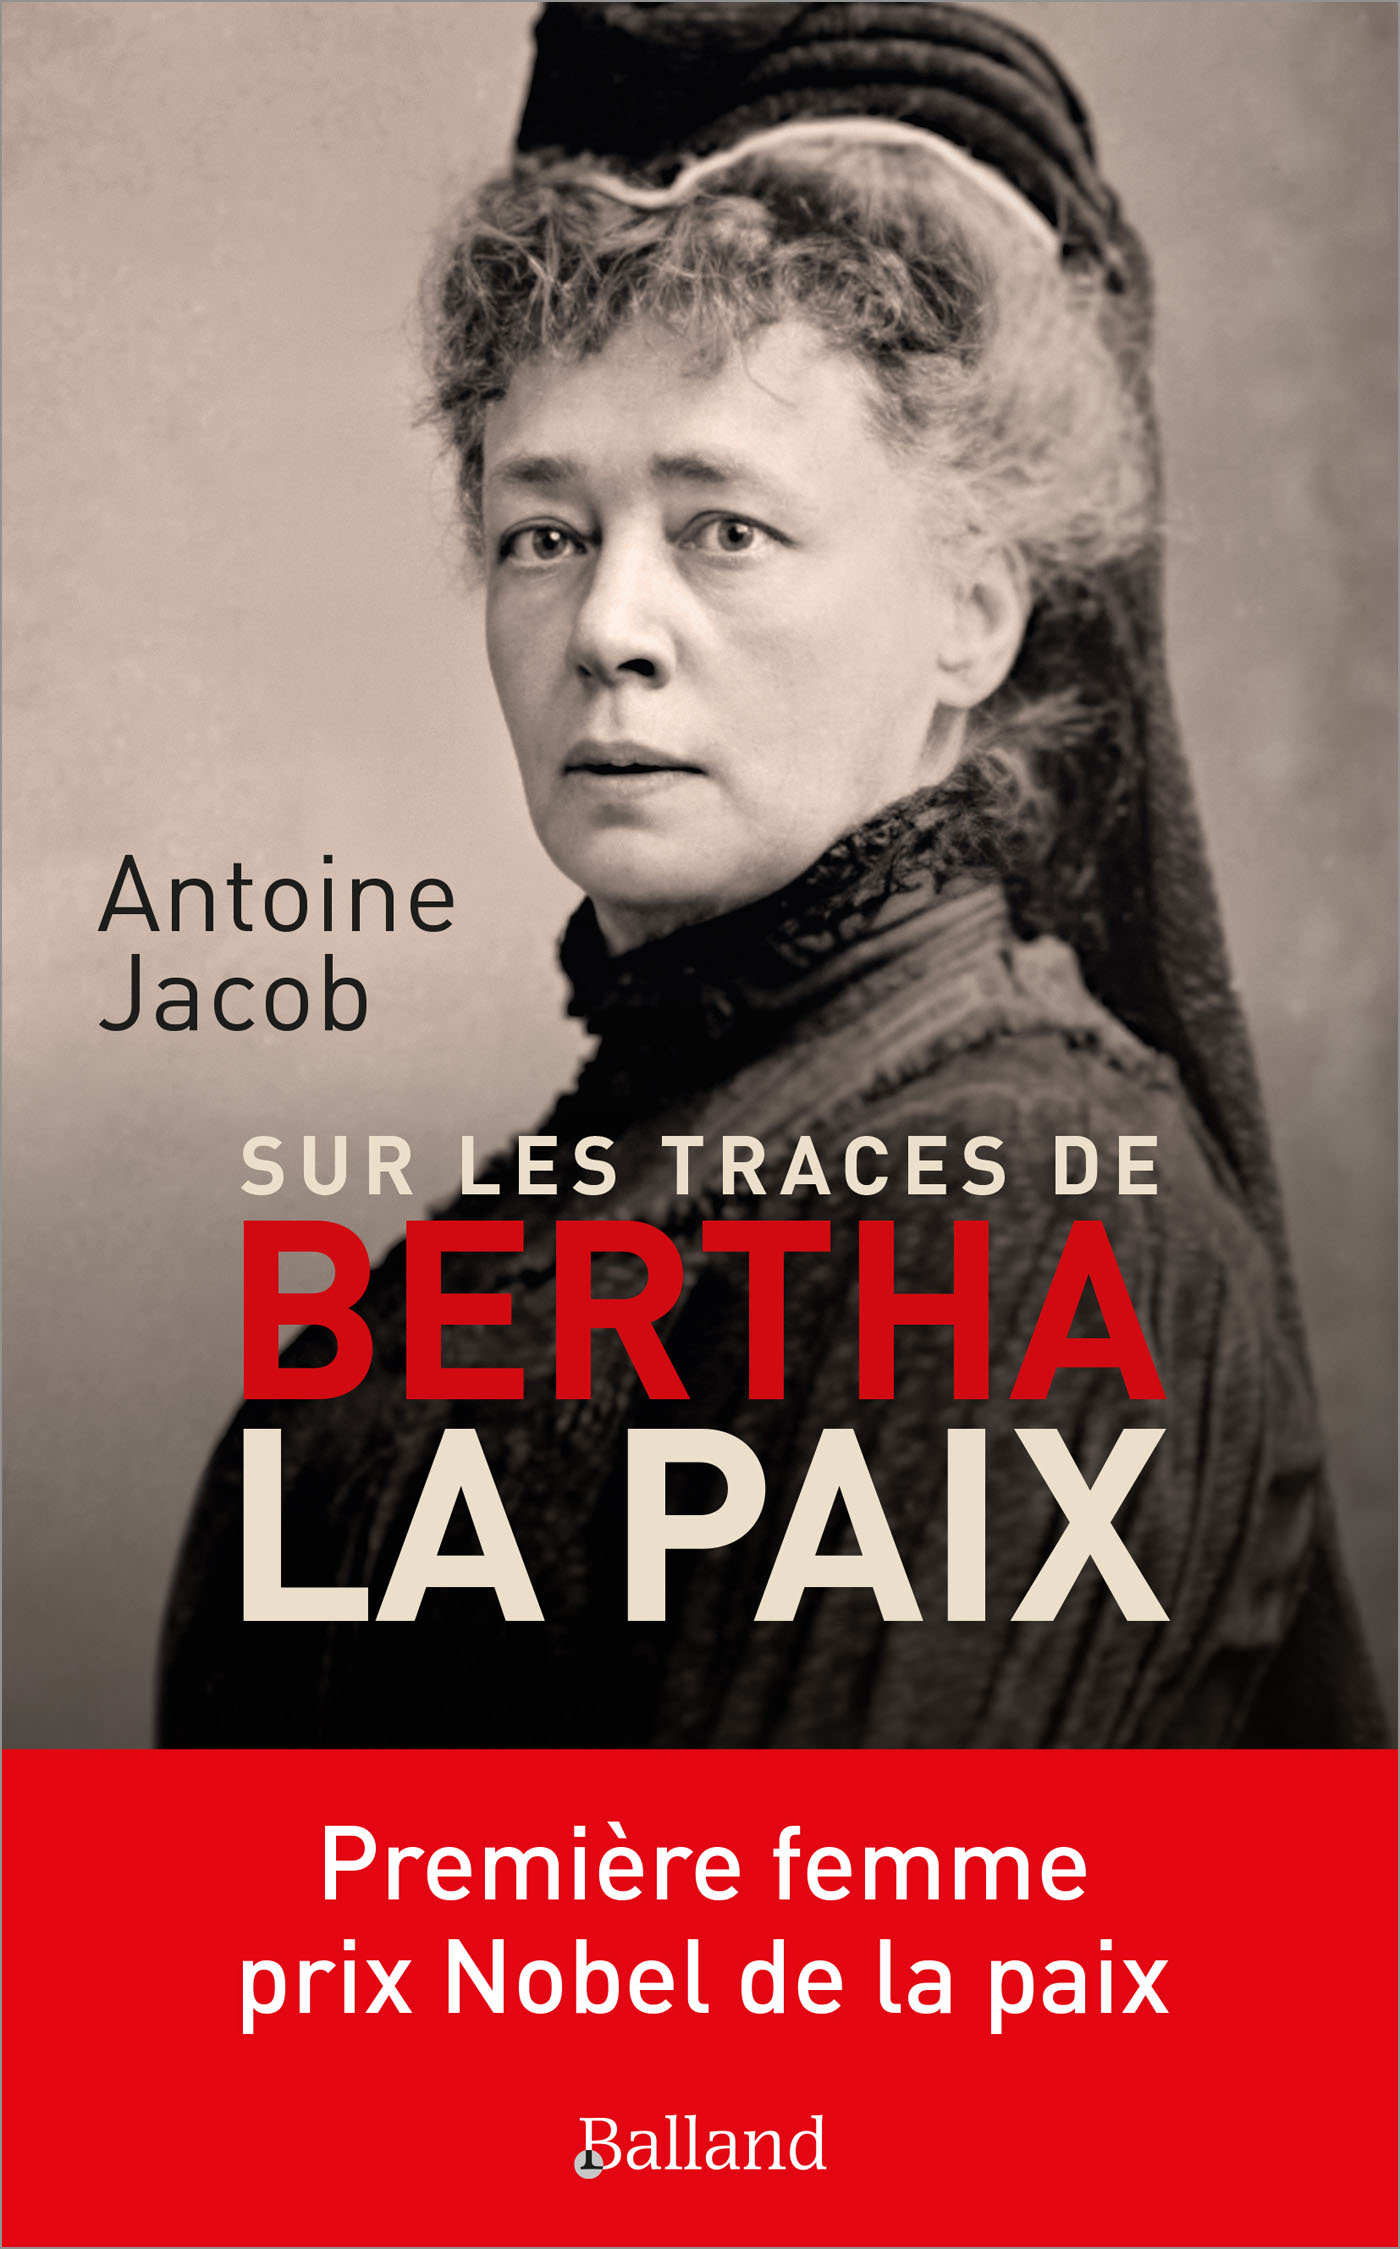 Antoine Jacob : « Bertha la Paix ». (c) Antoine Jacob.